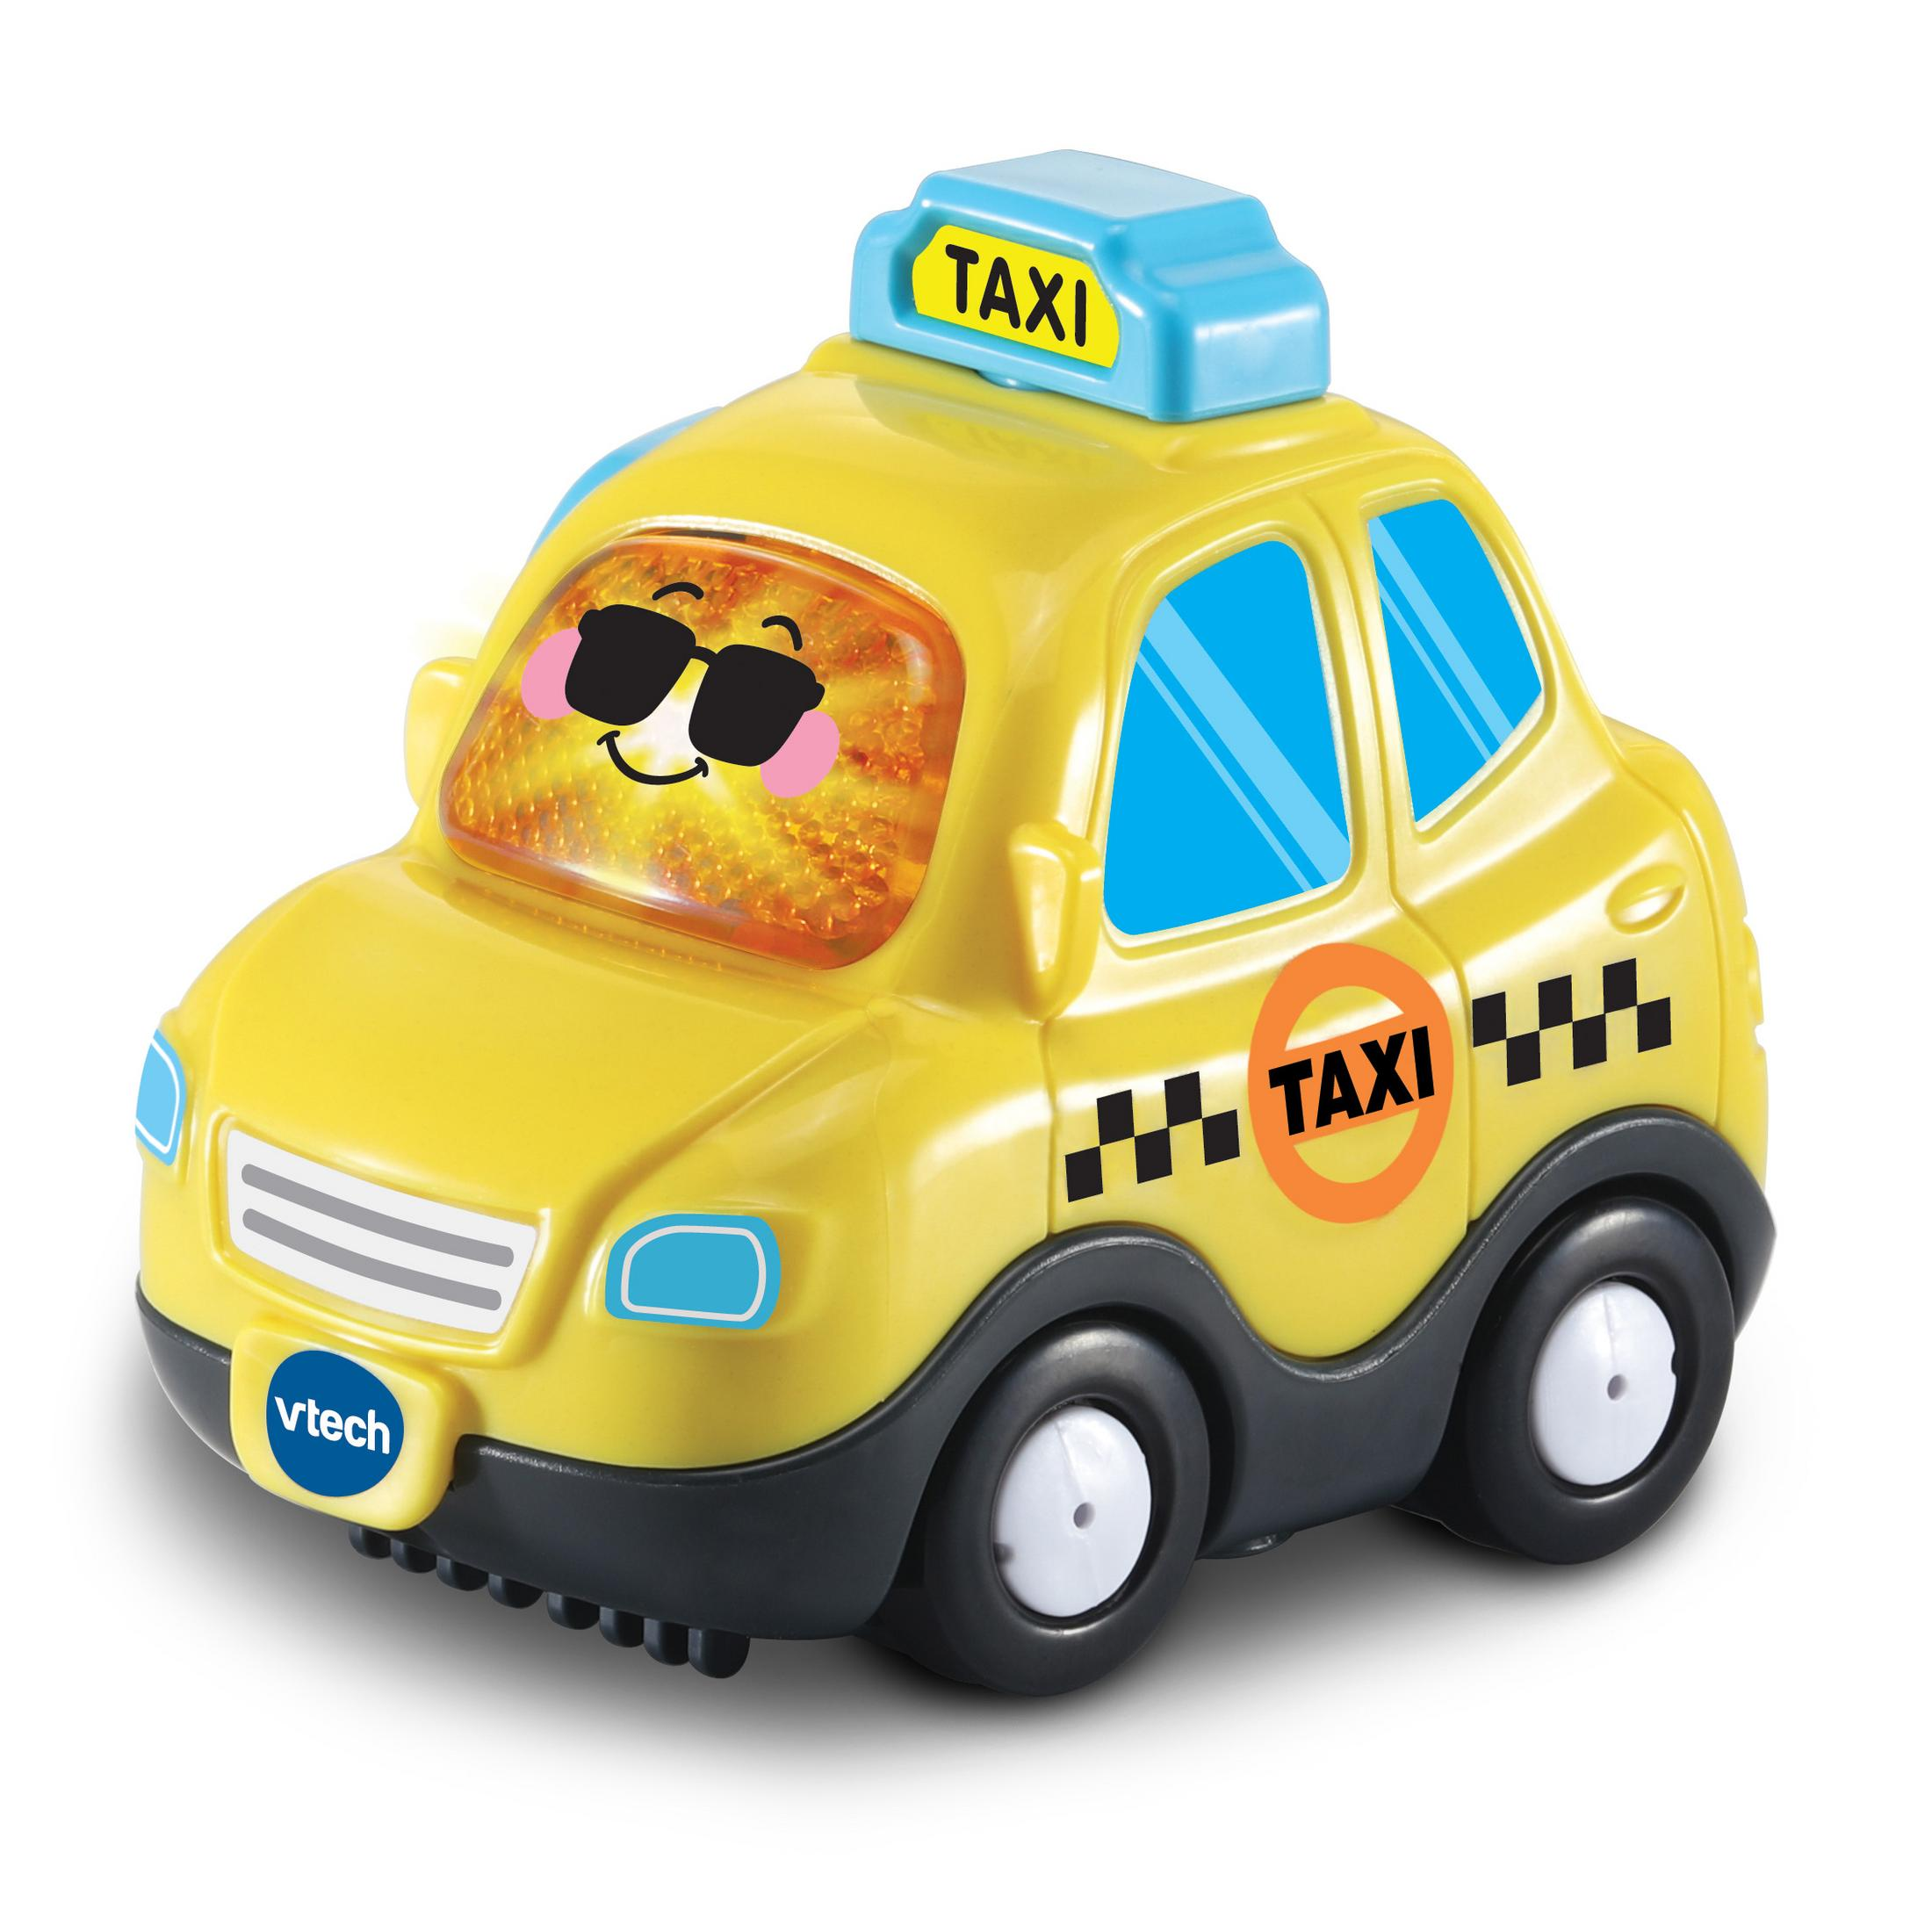 VTECH BF Spielzeugauto, TUT - Gelb 80-561104 TUT TAXI